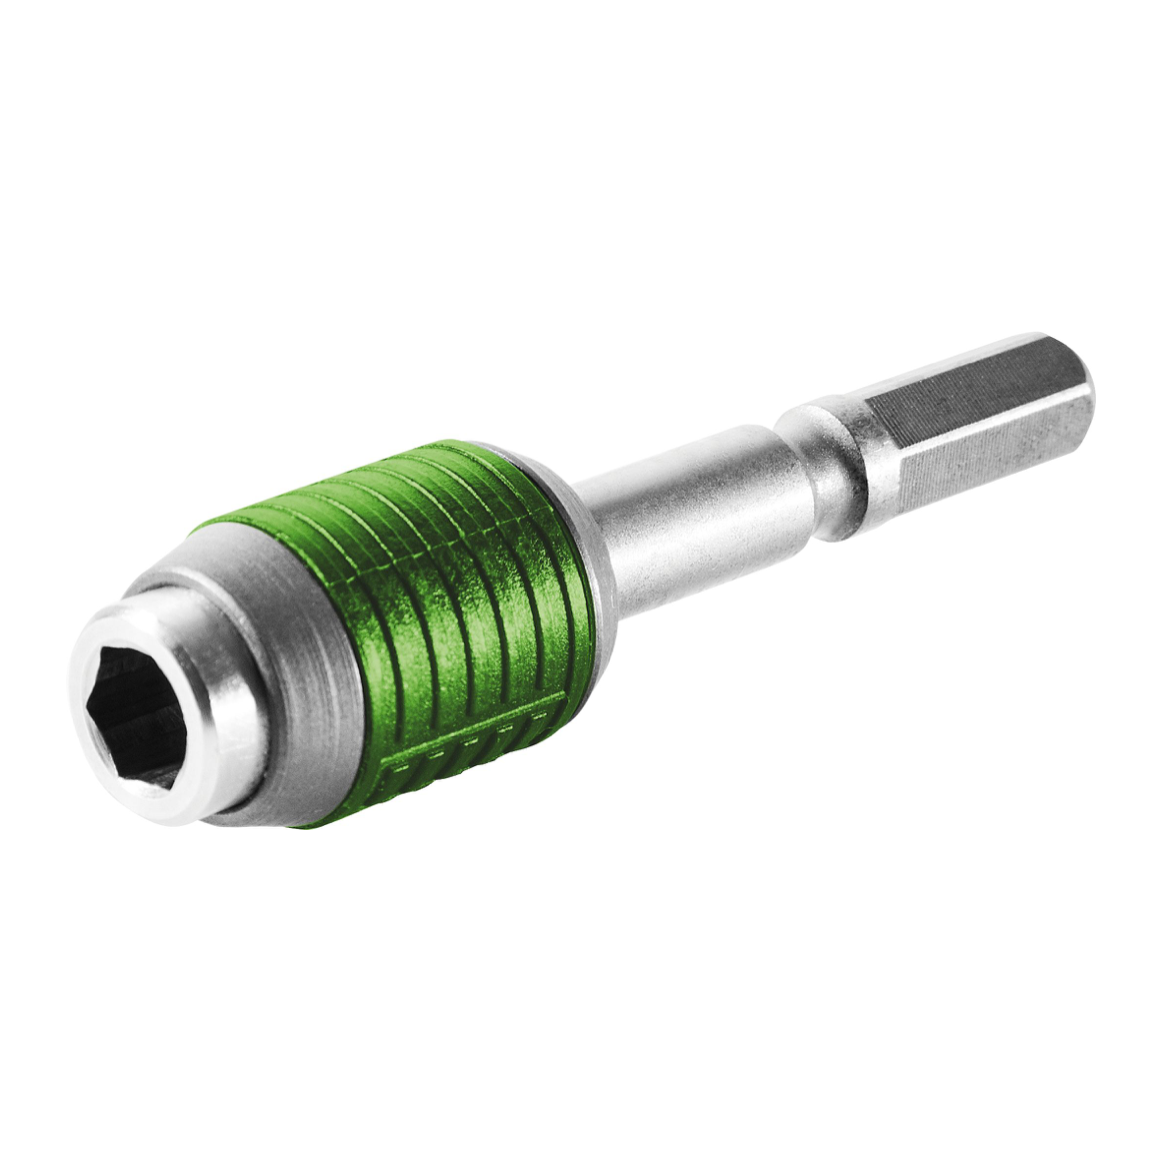 Festool BHS 60 CE Schnellwechsel-Bithalter zur Aufnahme von 25 mm Standardbits ( 205097 ) - Toolbrothers